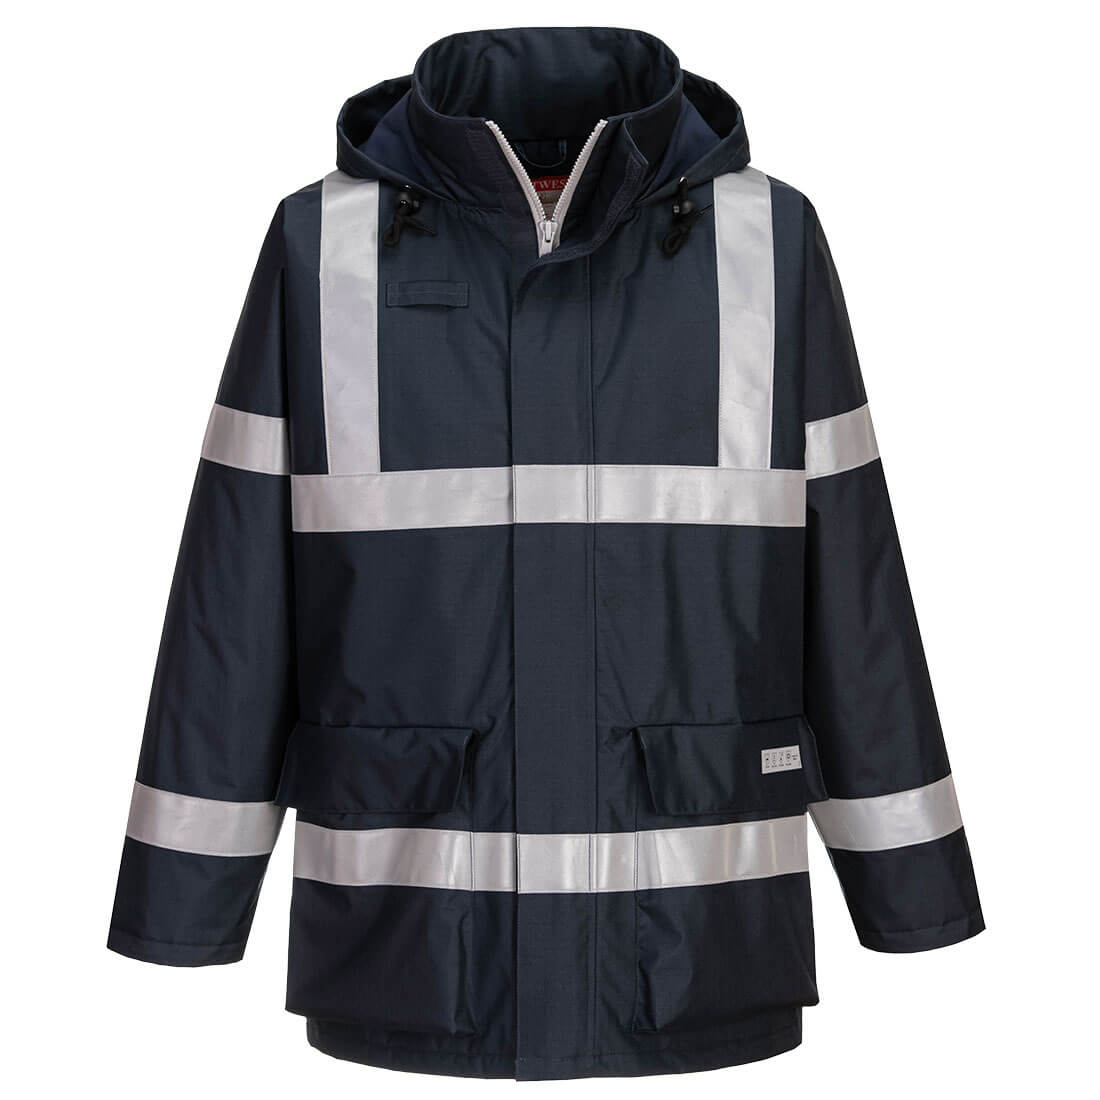 Bizflame Rain Anti-Static FR Jacket  (S785)